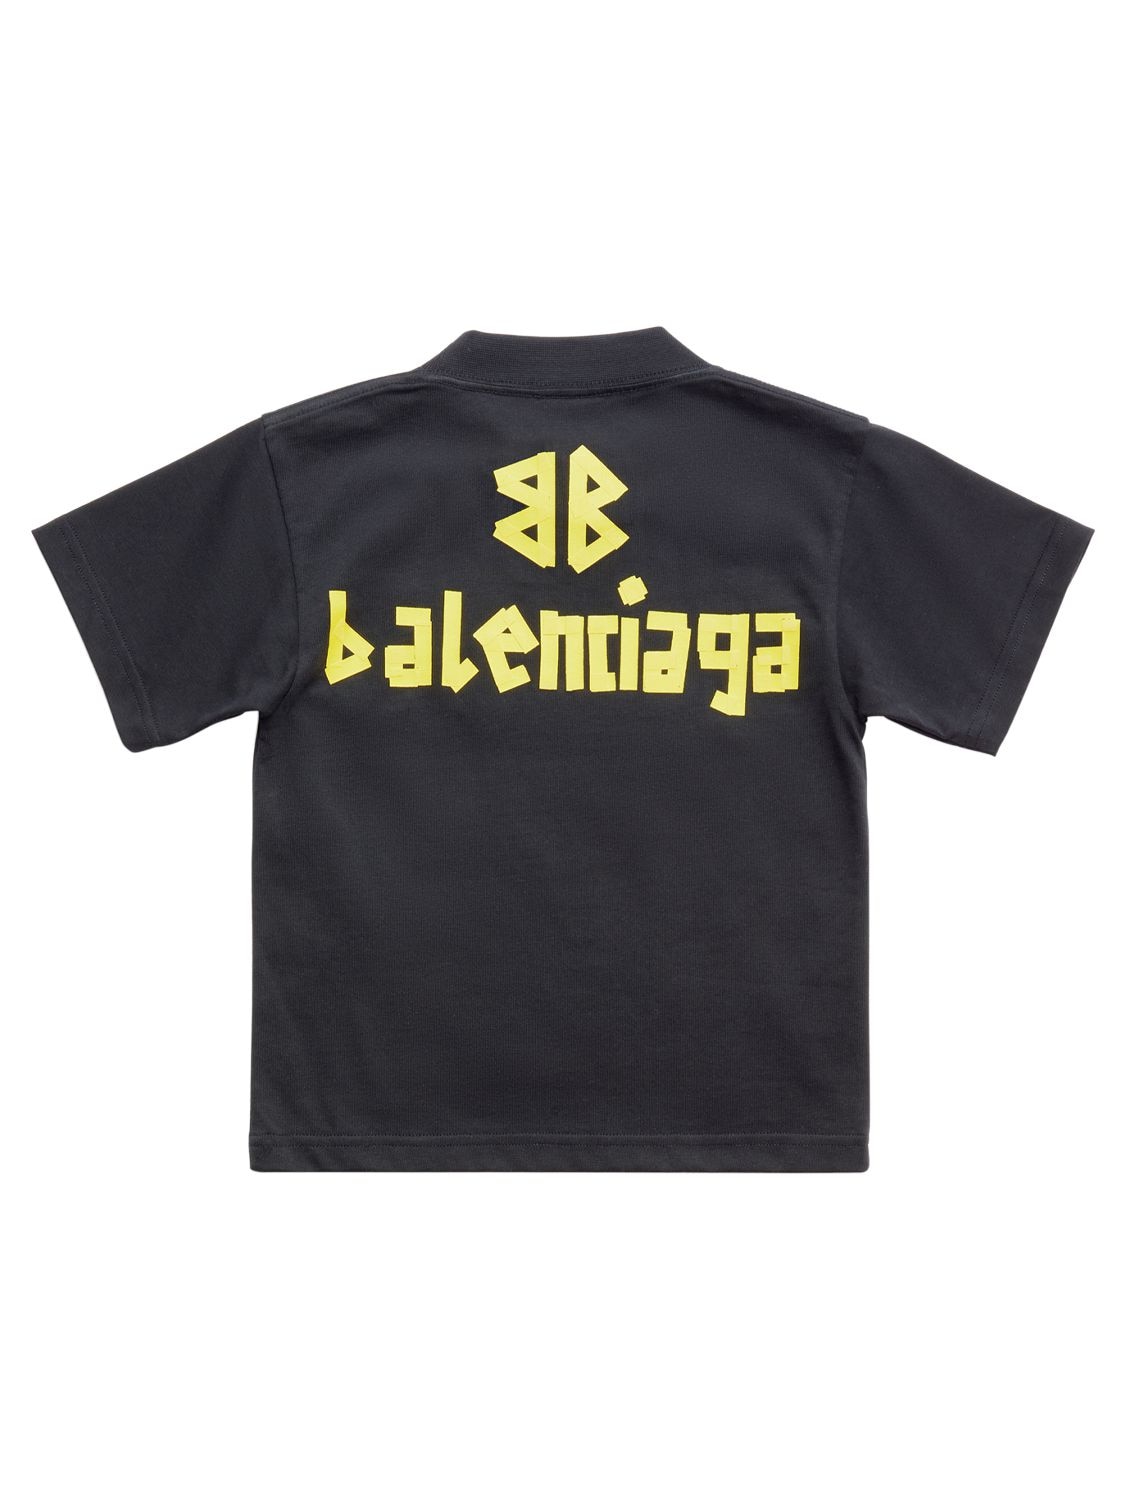 Shop Balenciaga Cotton T-shirt In Washed Black